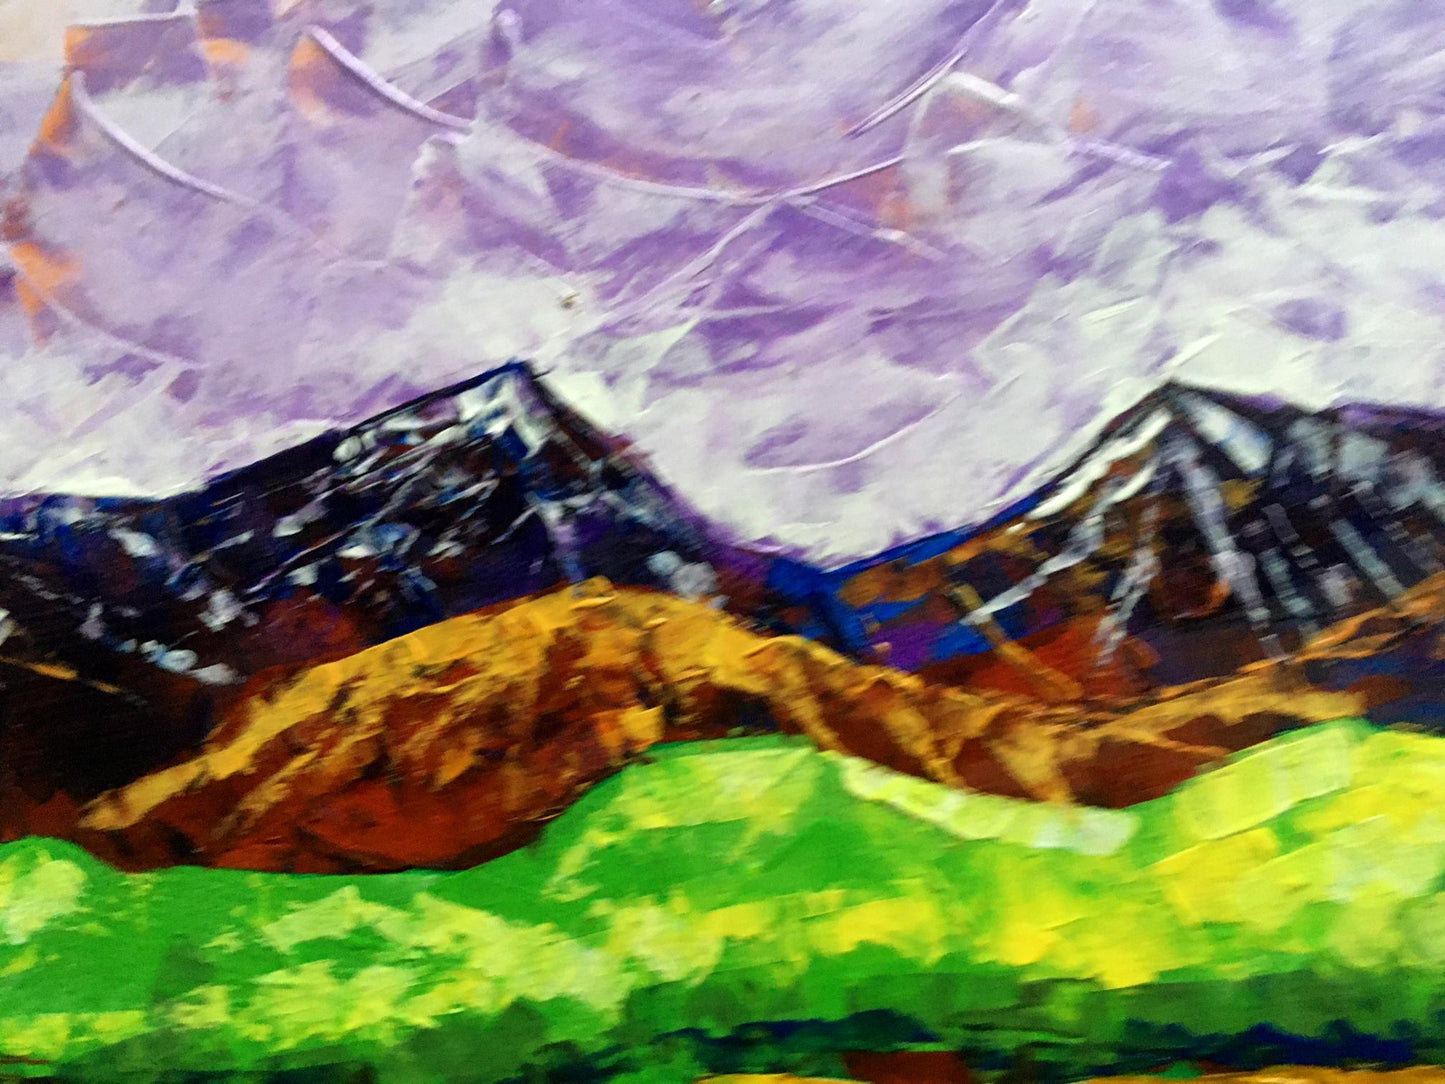 Oil painting In the mountains Zadorozhnya V. V.